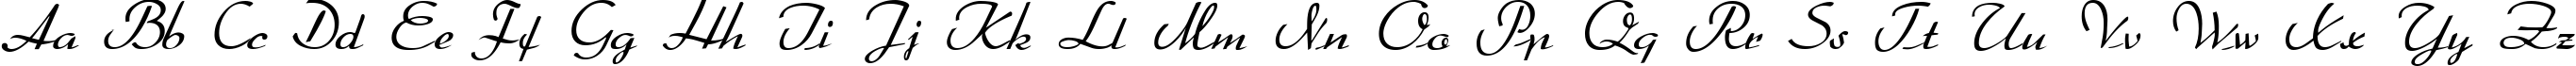 Пример написания английского алфавита шрифтом Arabella